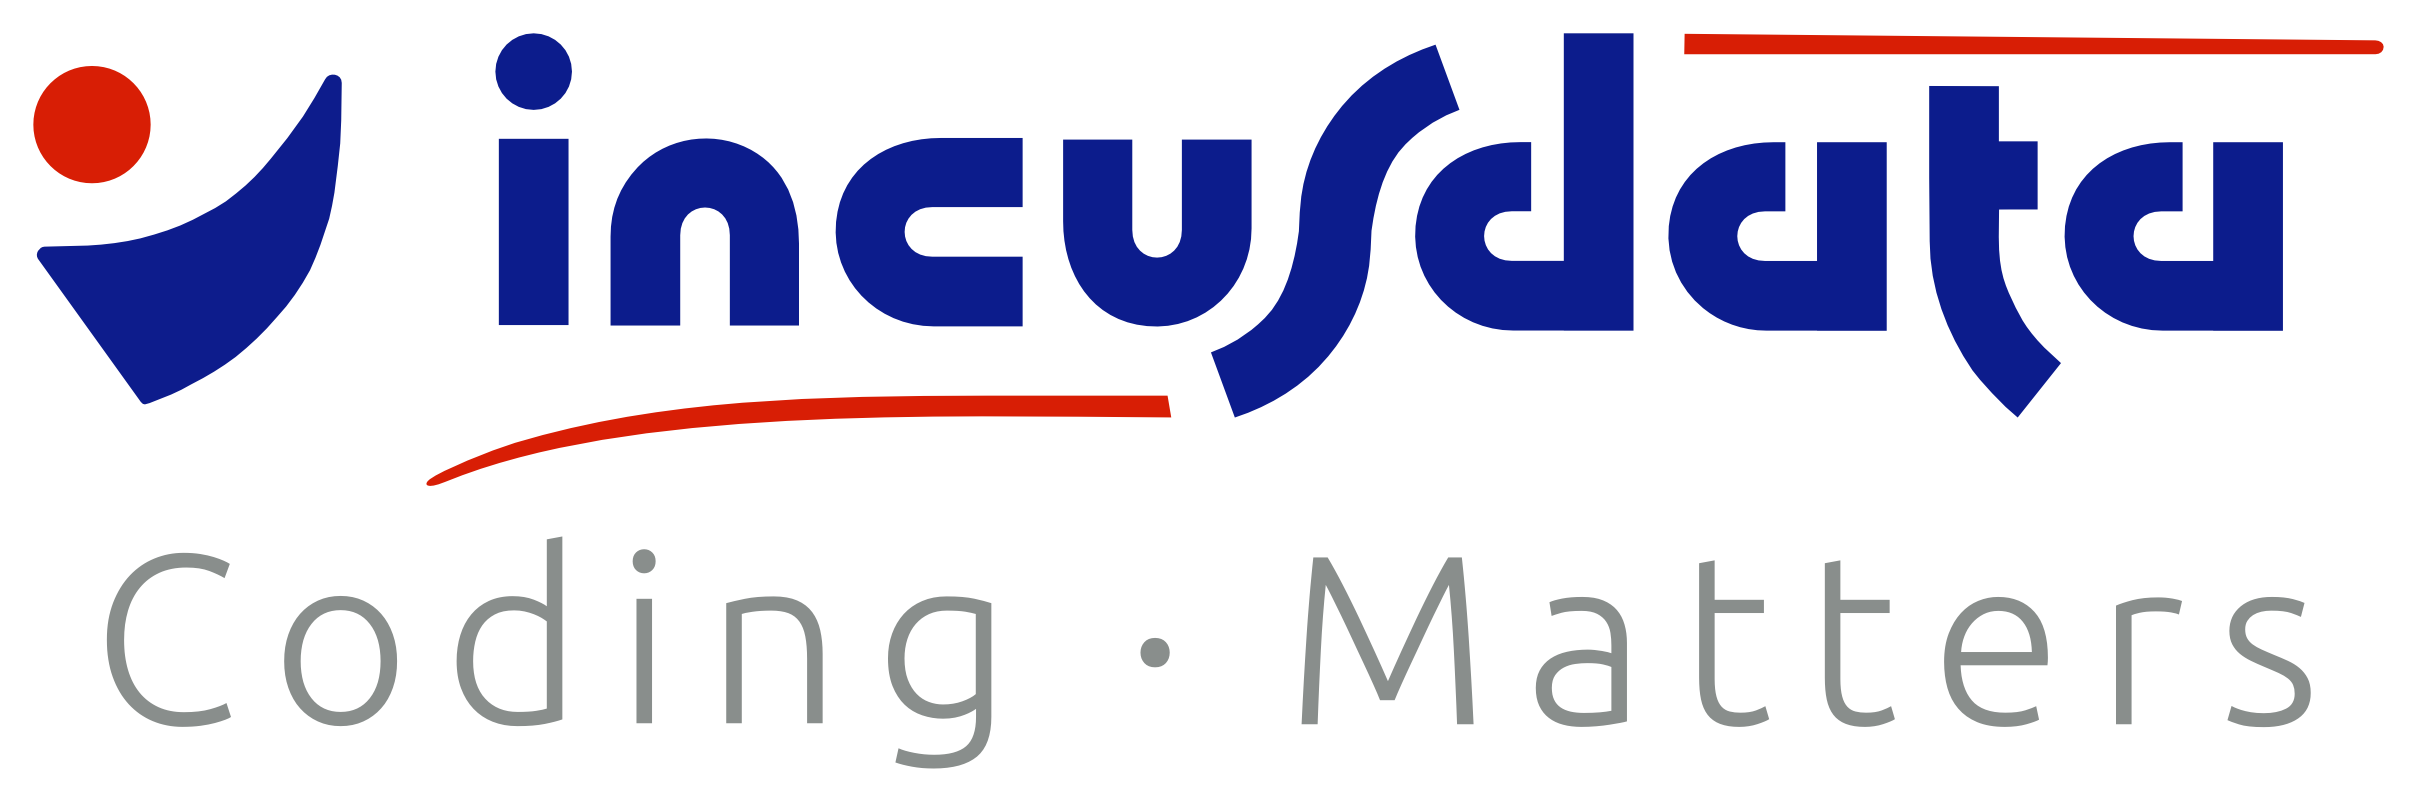 Incus Data Logo